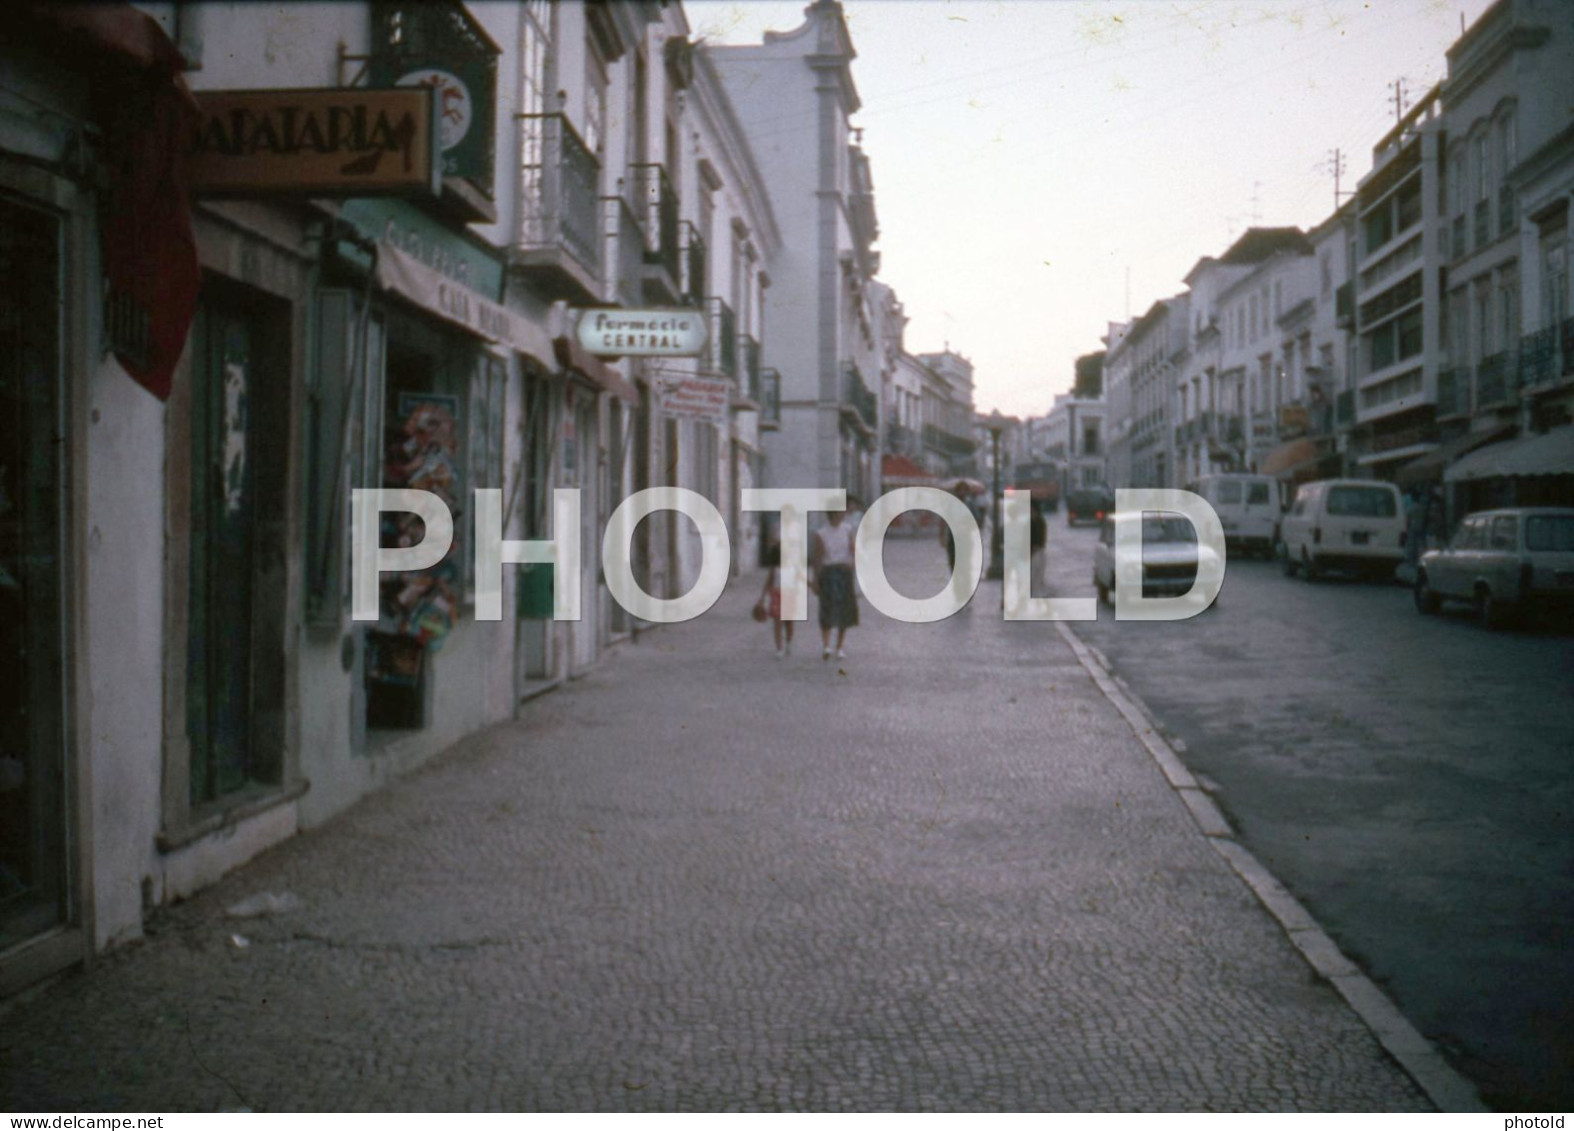 7 SLIDES SET 1984 ALGARVE PORTUGAL 16mm DIAPOSITIVE SLIDE Not PHOTO No FOTO Nb4084 - Diapositive